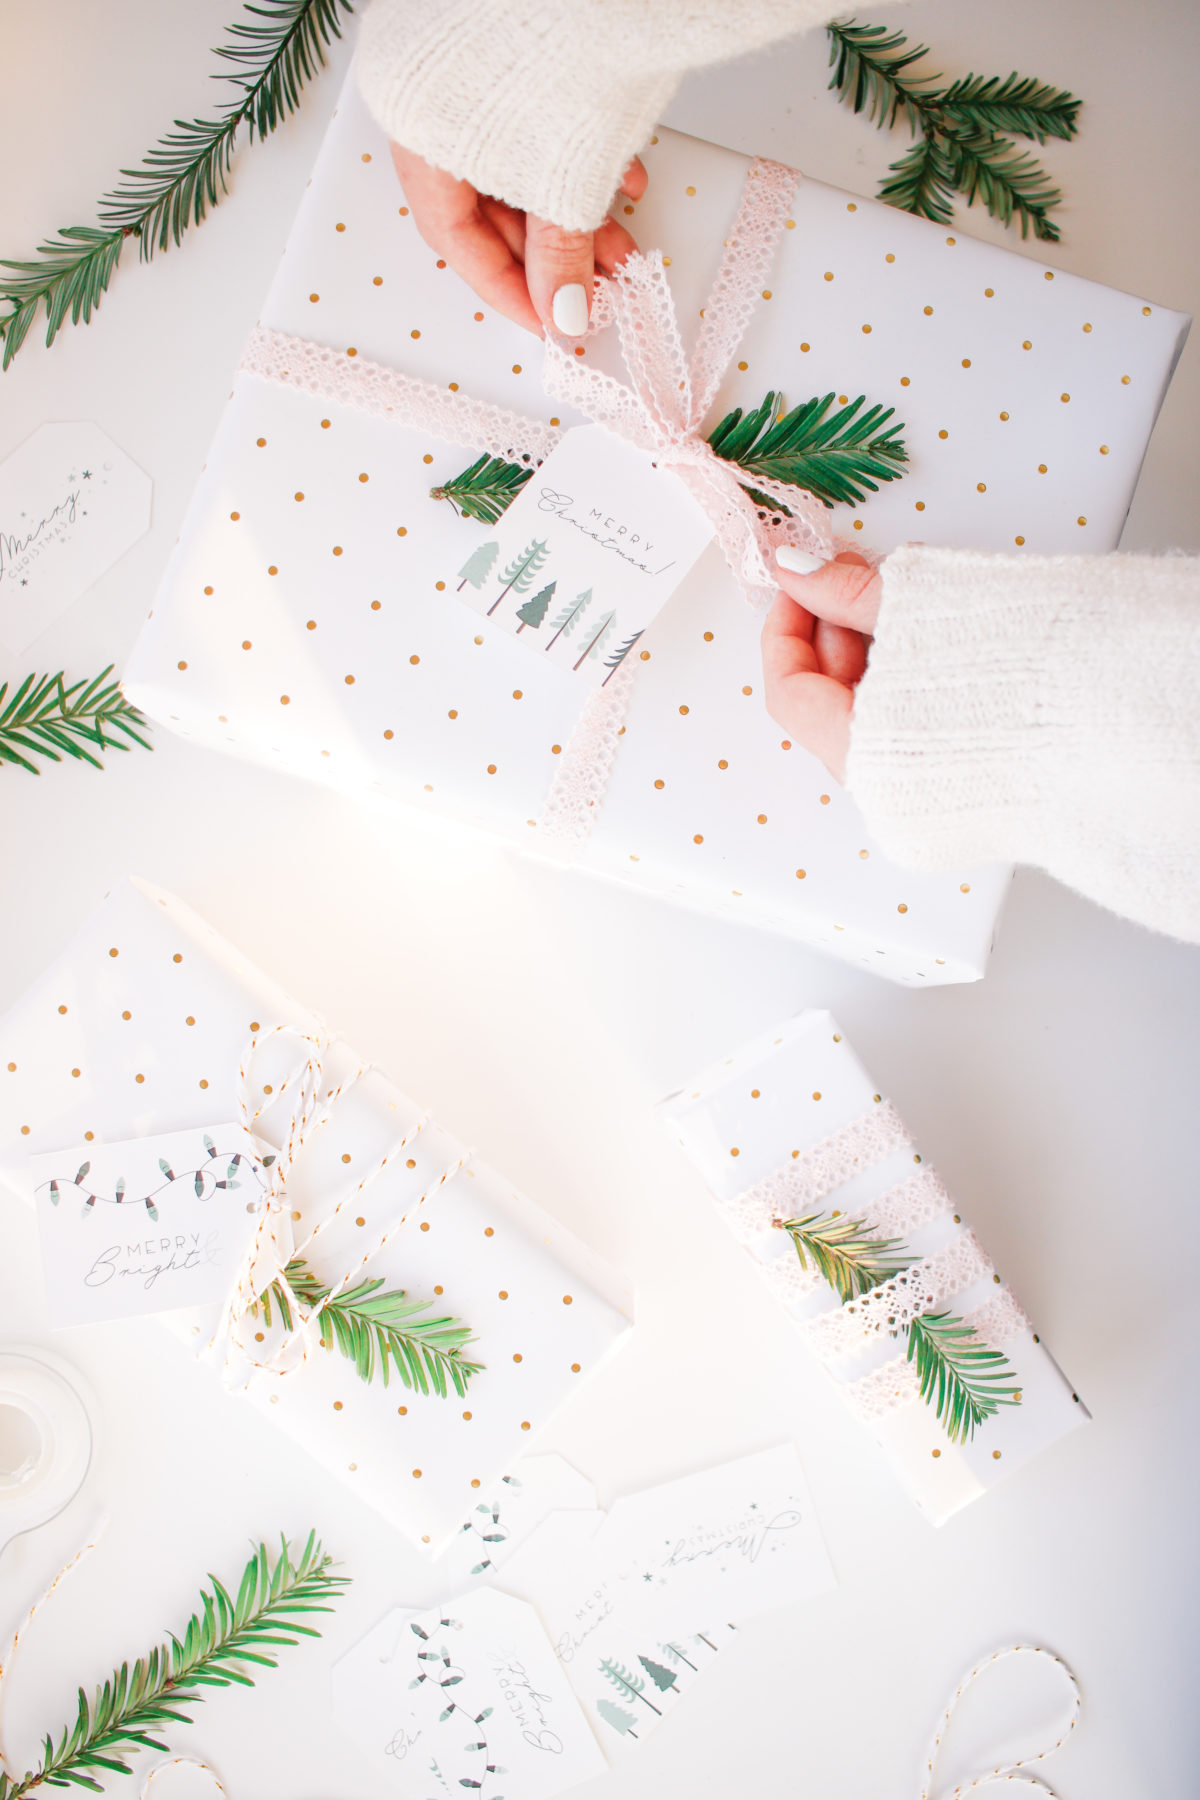 Free Printable Christmas Tags + Gift Wrapping Tips